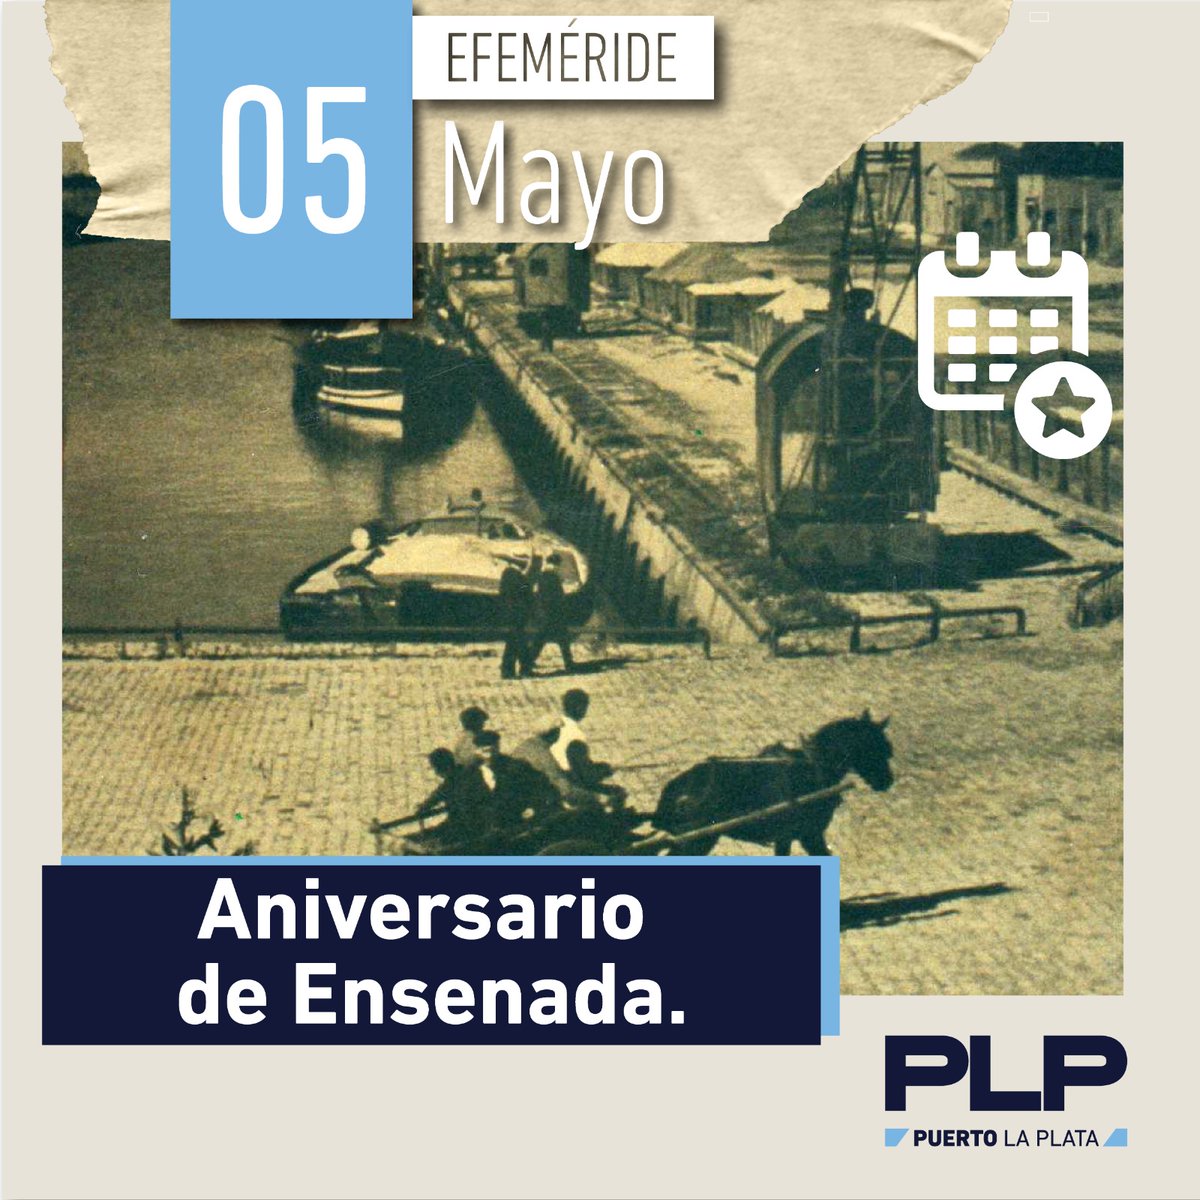 🗓️5 de mayo 🎊Aniversario de Ensenada. 🙌🏻Celebramos los 223 años de Ensenada, gran ciudad portuaria y productiva de la que estamos orgullosos de formar parte. 🤗¡Felicidades ensenadenses!